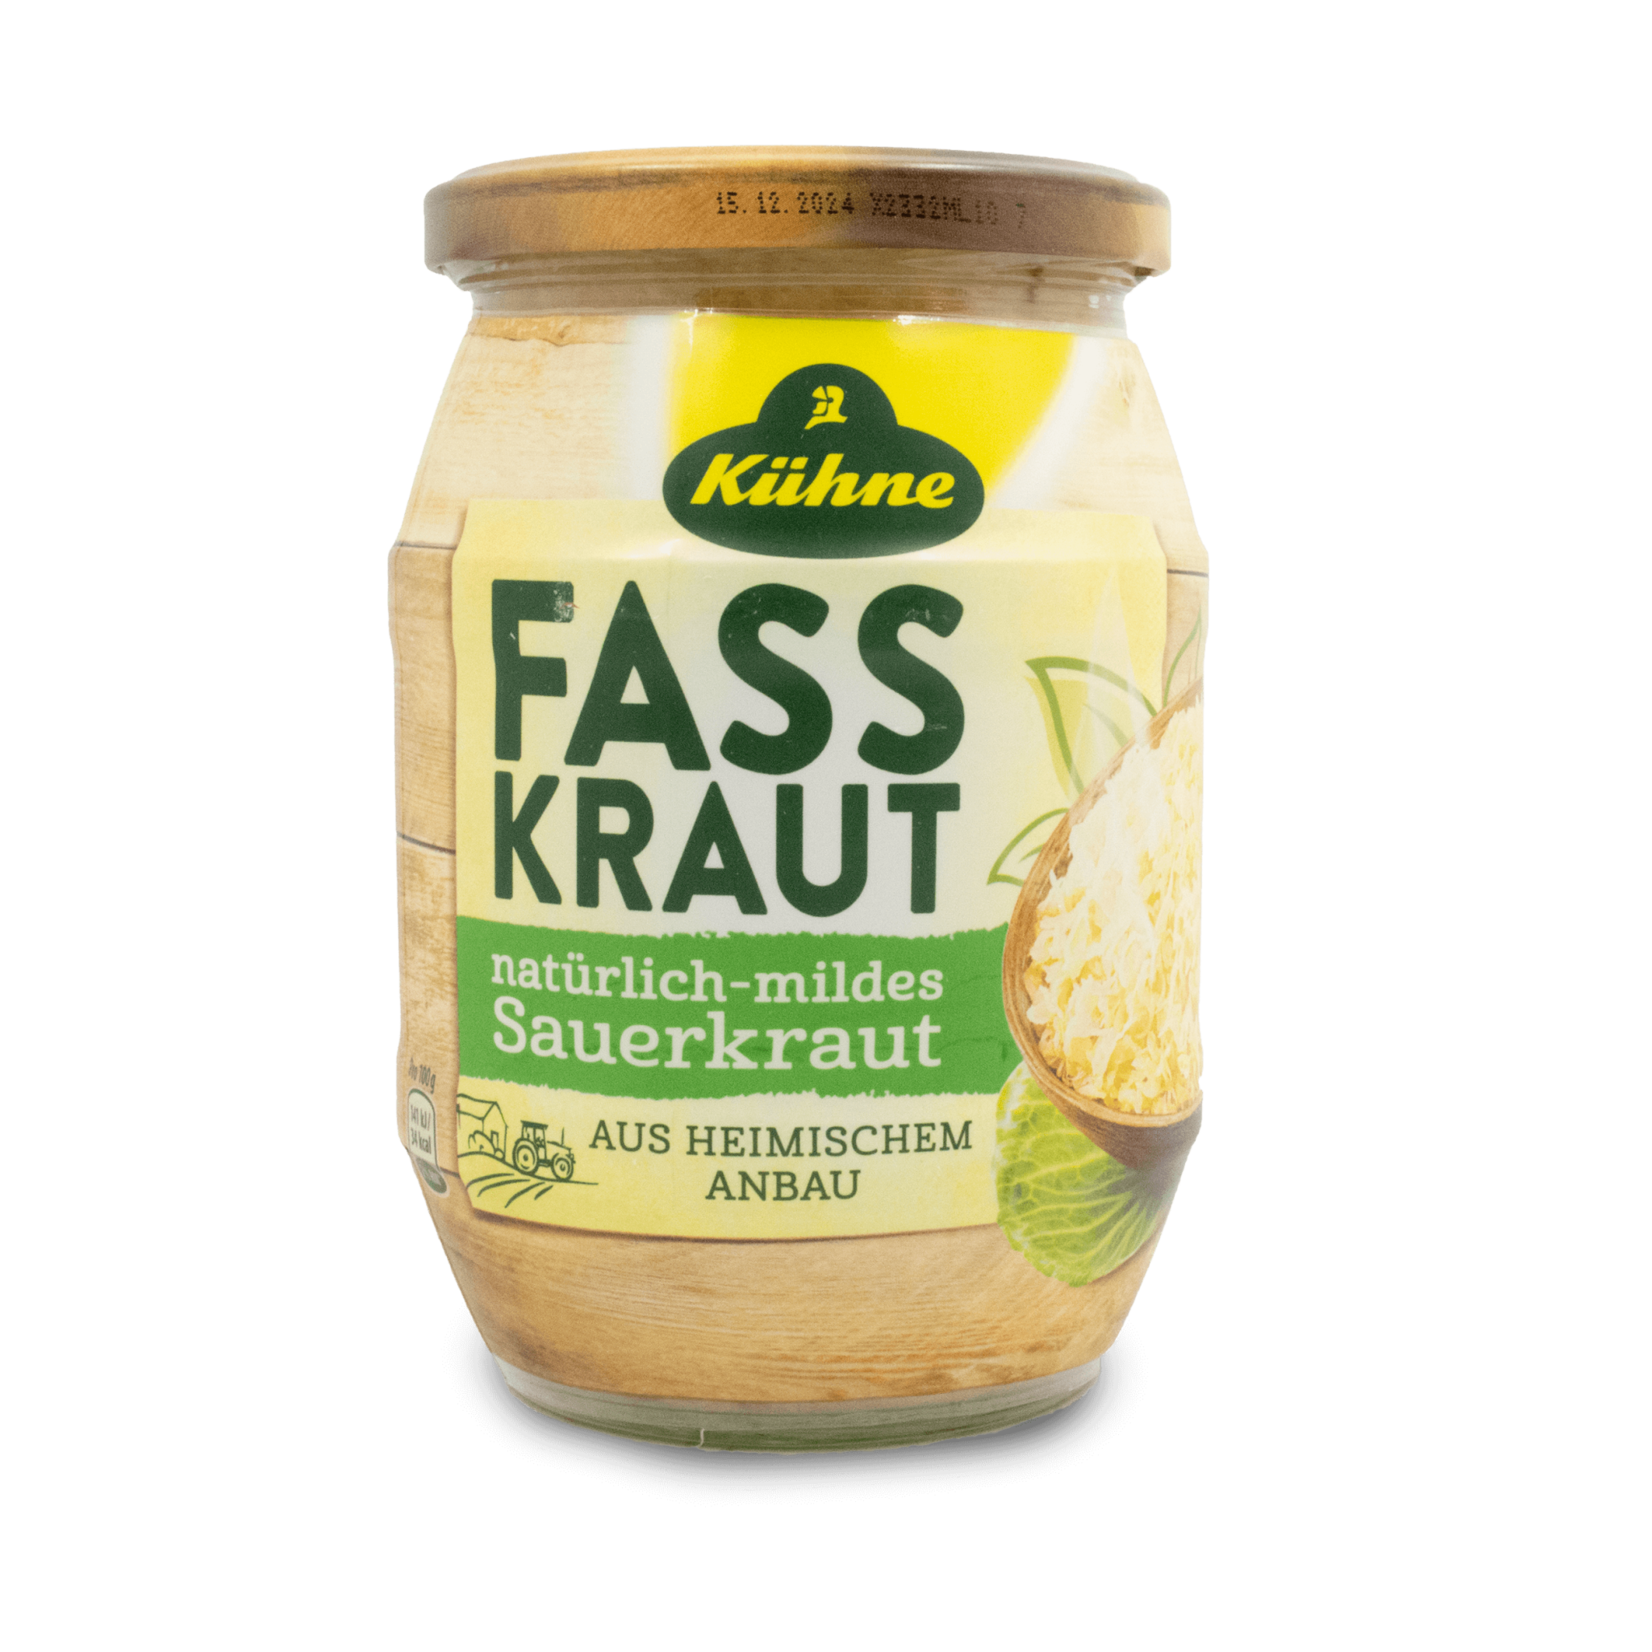 Kuhne Kuhne Fass Kraut Sauerkraut 680g